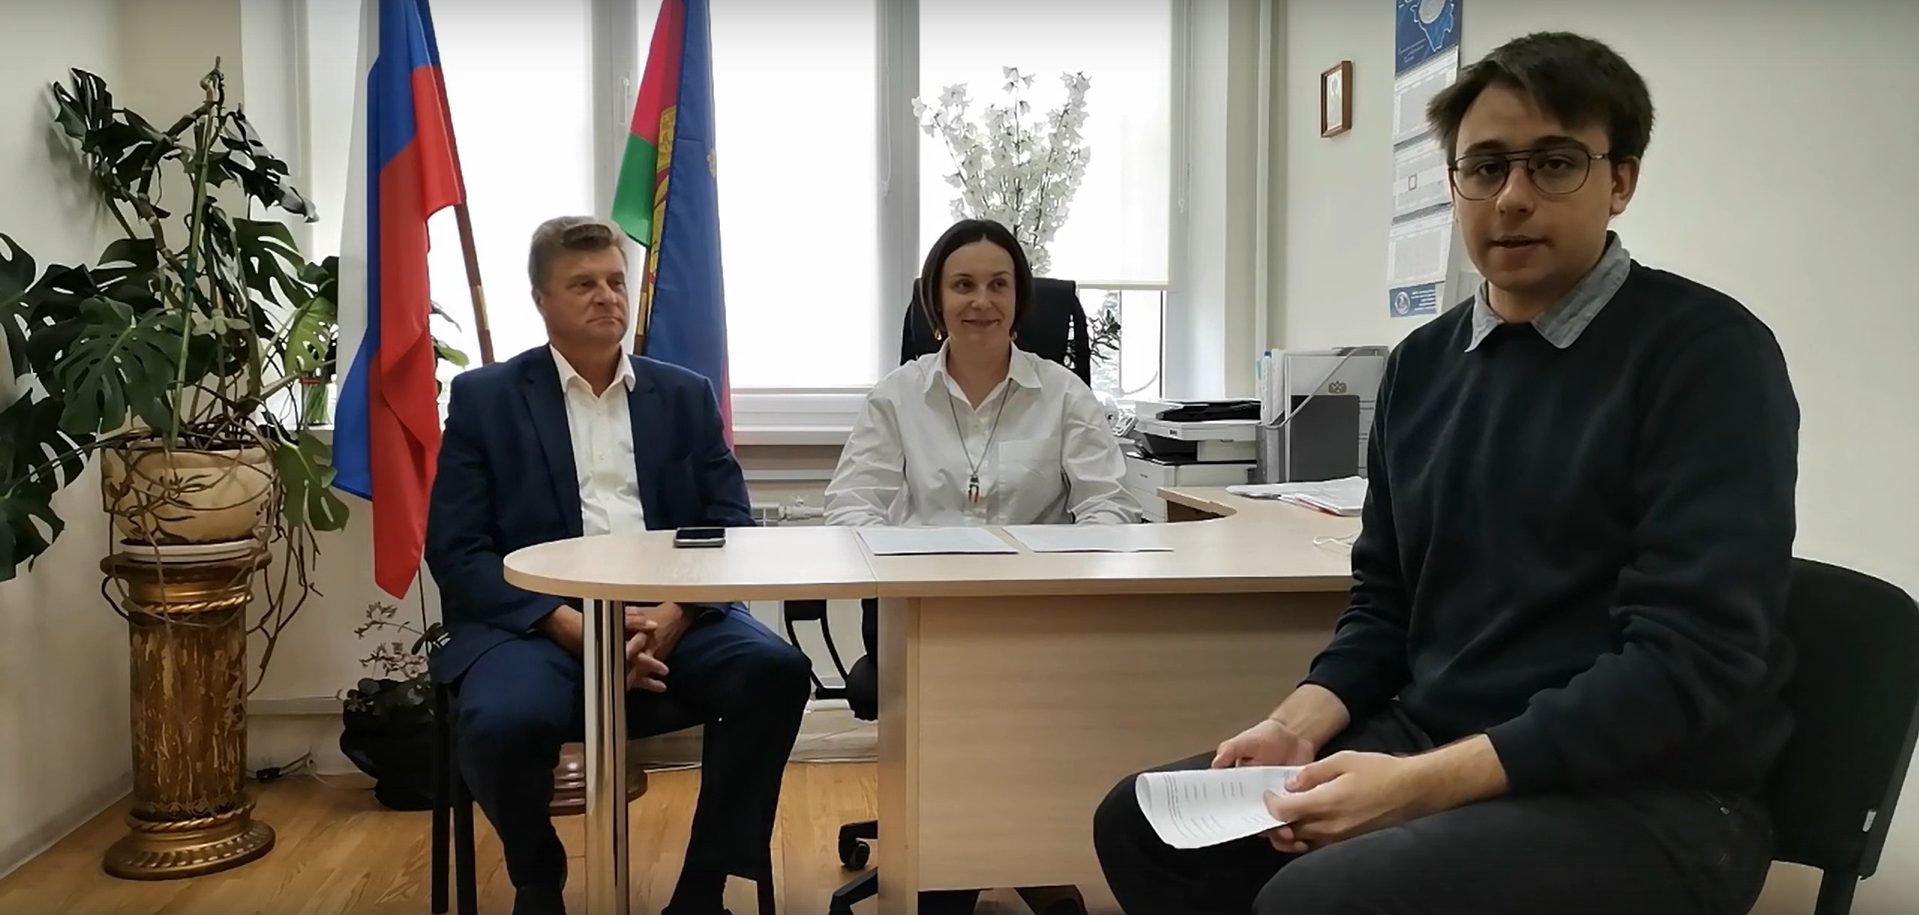 Второе интервью на тему выборов было проведено совместно с ТИК Пашковская